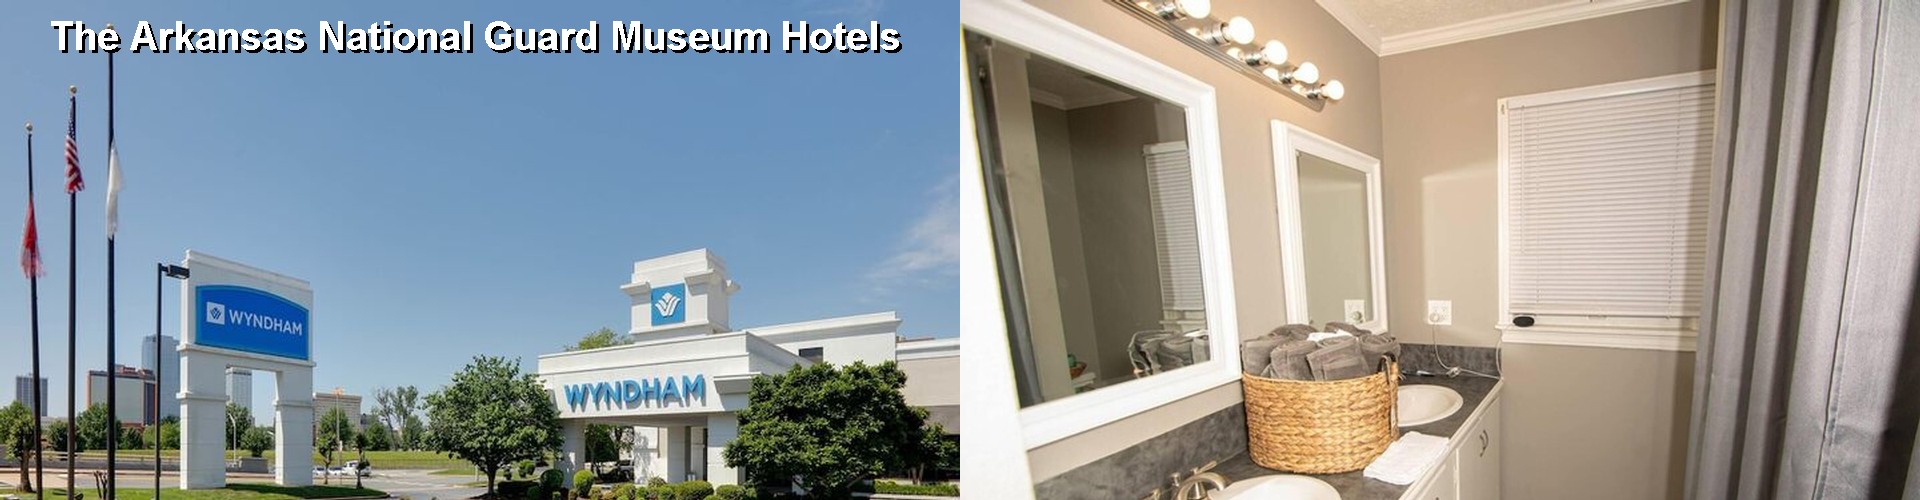 5 Best Hotels near The Arkansas National Guard Museum